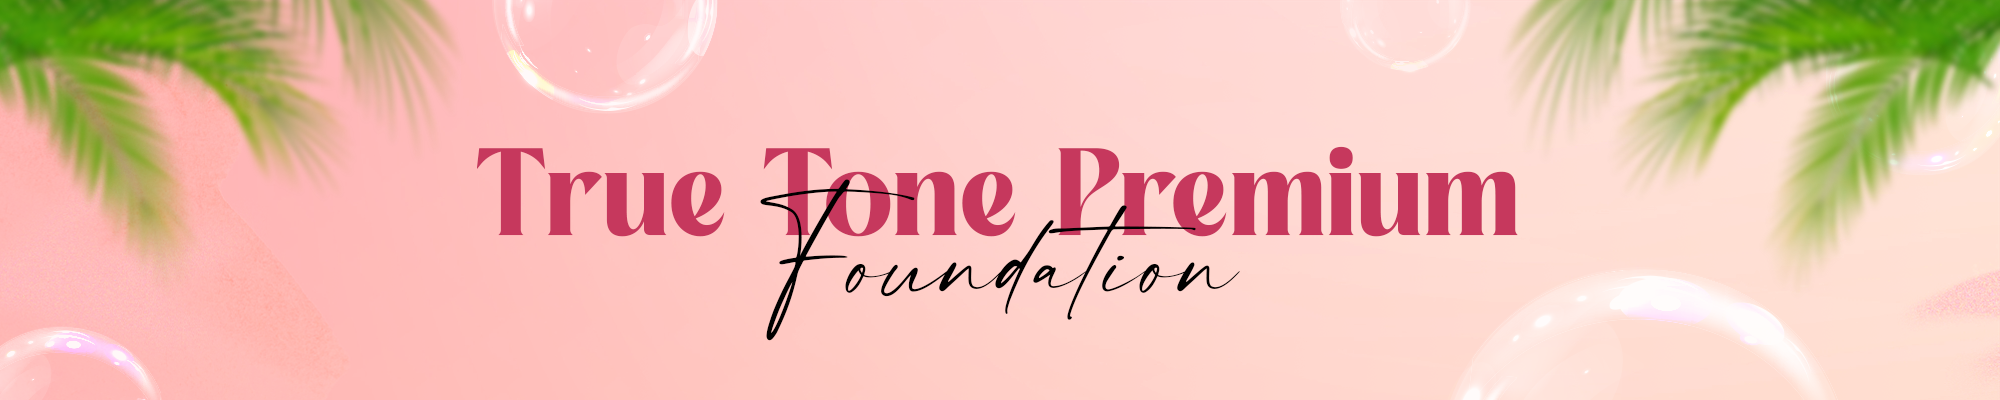 True Tone Premium Foundation